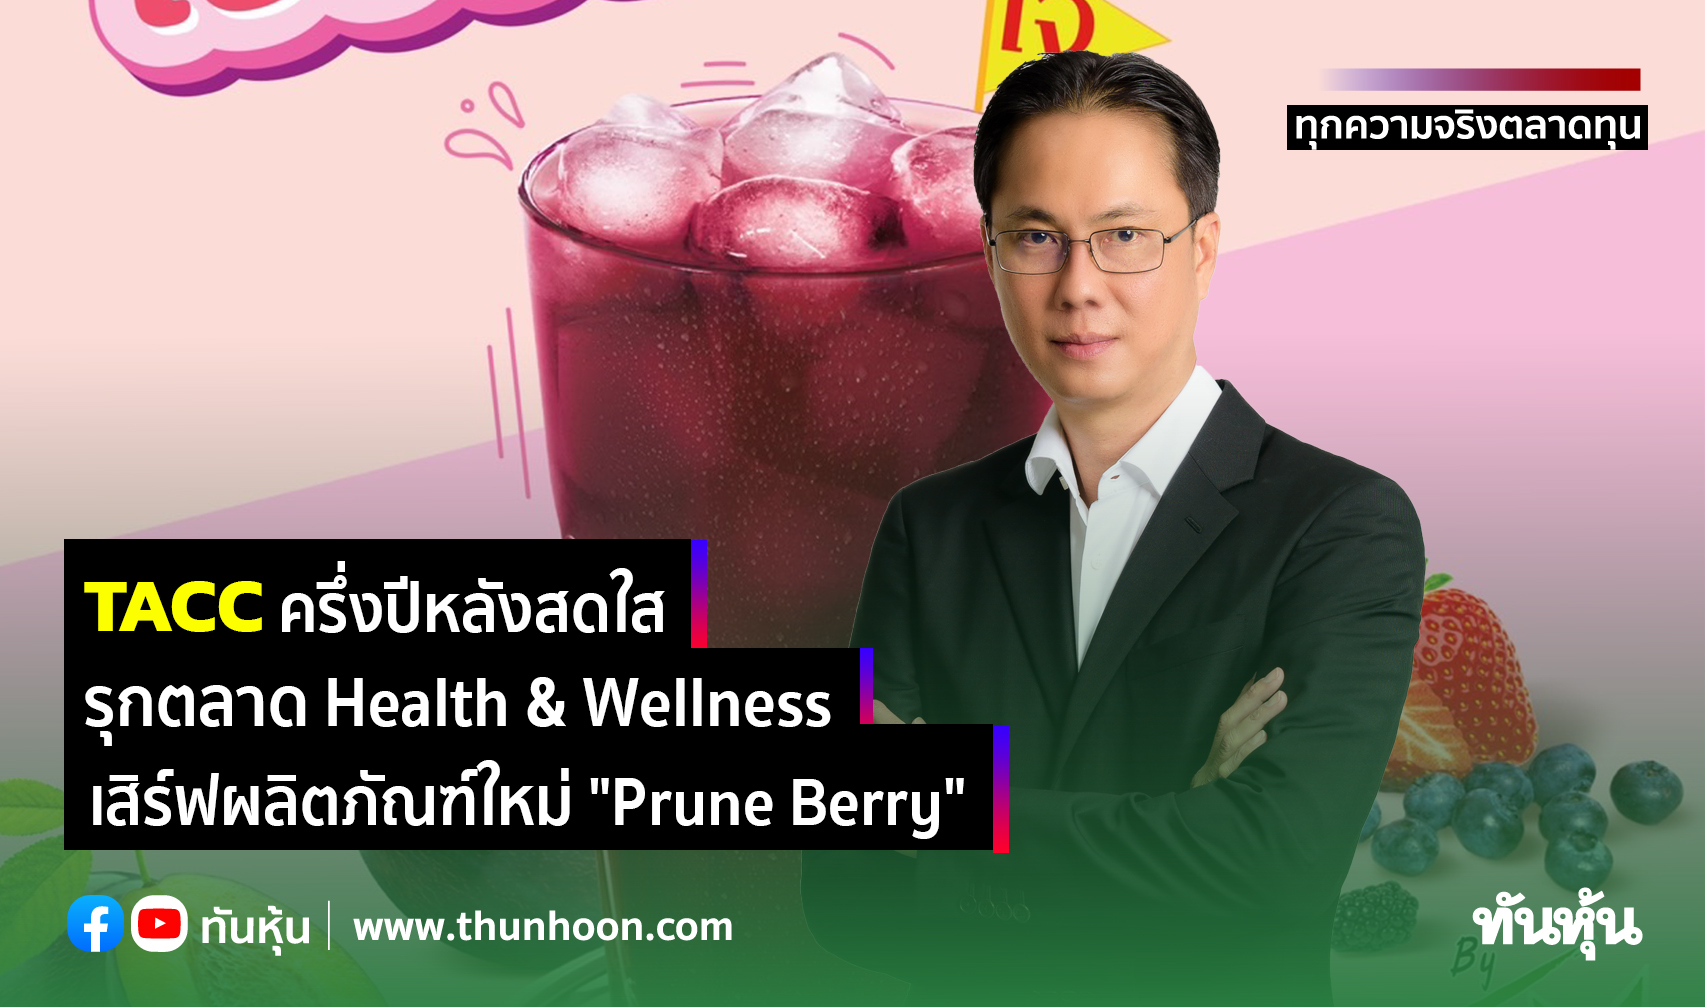 TACC ครึ่งปีหลังสดใส รุกตลาด Health & Wellness  เสิร์ฟผลิตภัณฑ์ใหม่ "Prune Berry"